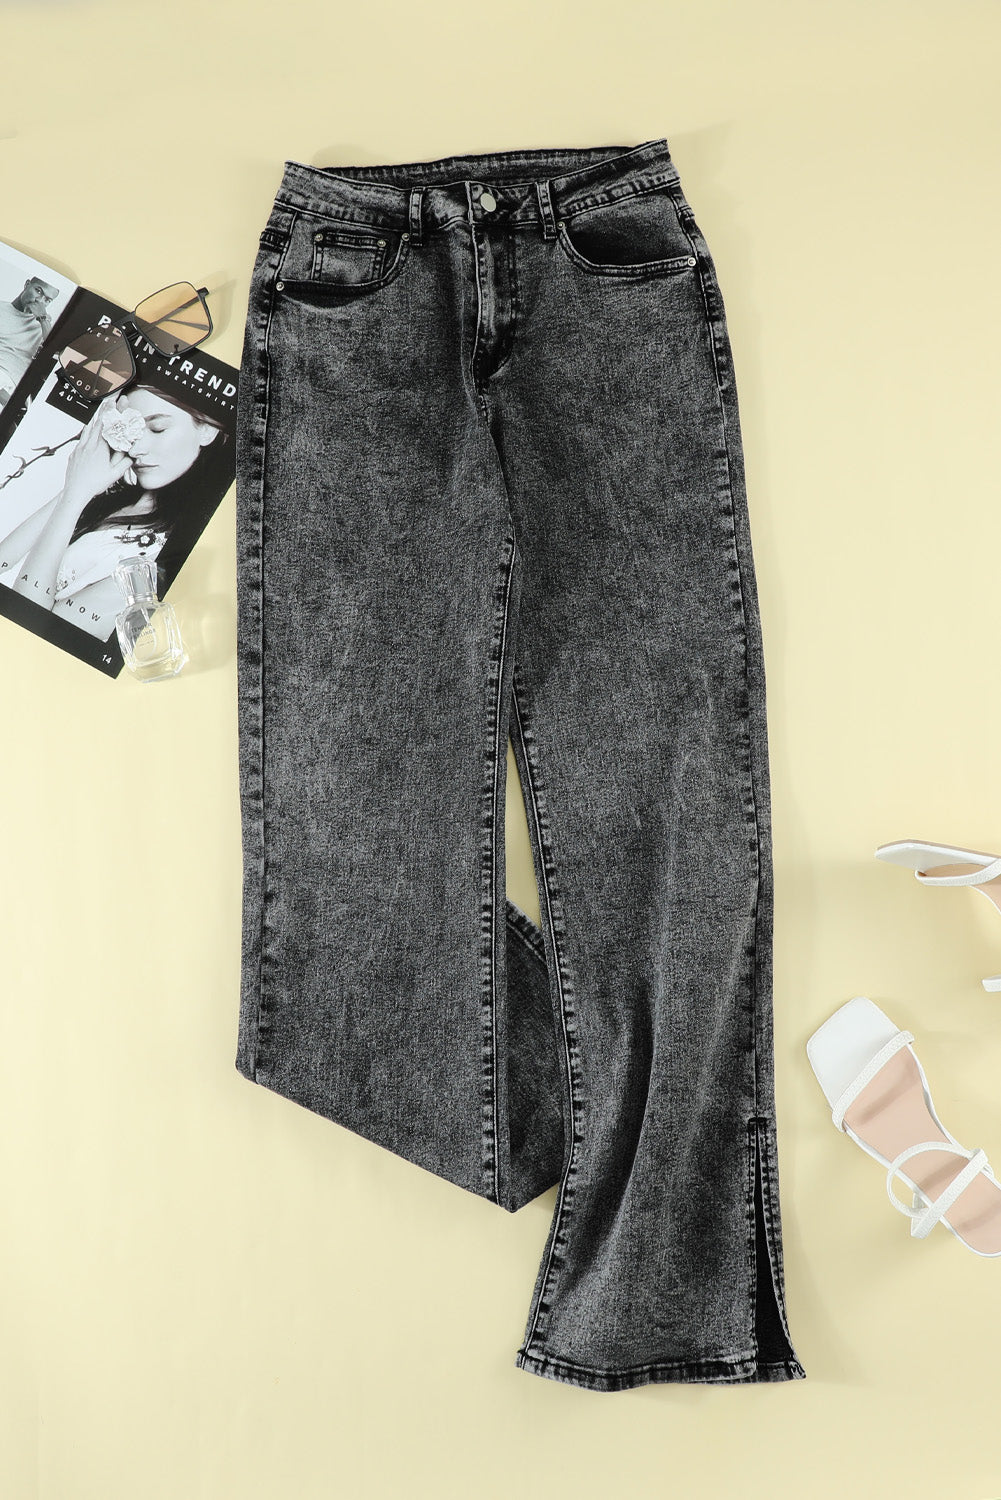 Black High Rise Slit Anklet Flare Jeans Jeans JT's Designer Fashion